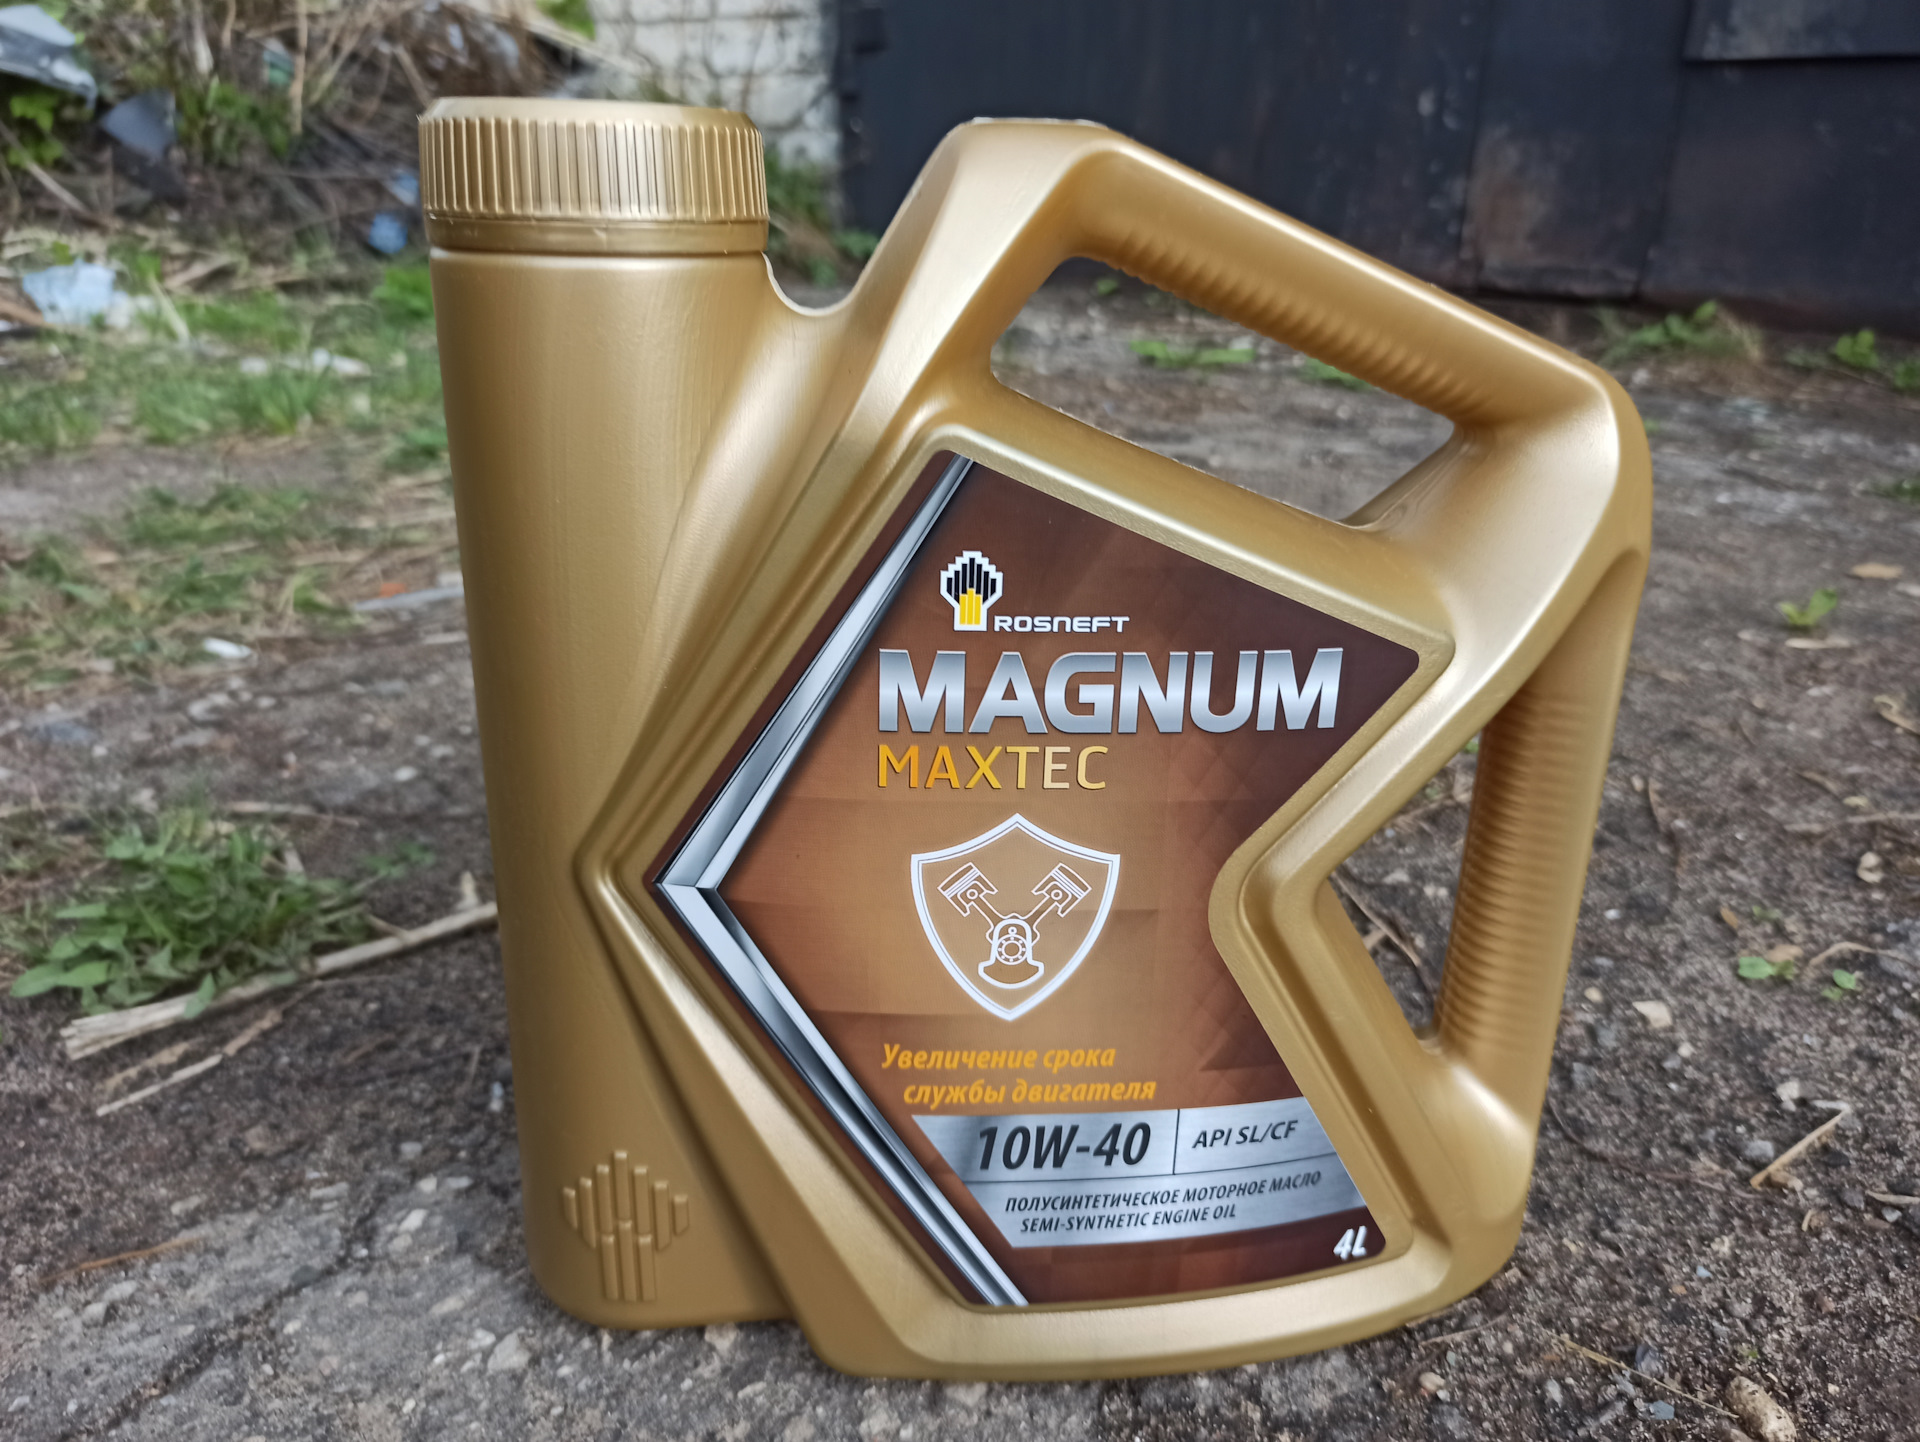 Моторное масло роснефть магнум 10w 40. Rosneft Magnum Maxtec 10w-40. Масло Магнум. Масло Магнум премиум. Можно применять масло Магнум синтетику 5 w40 в калину и отзывы.